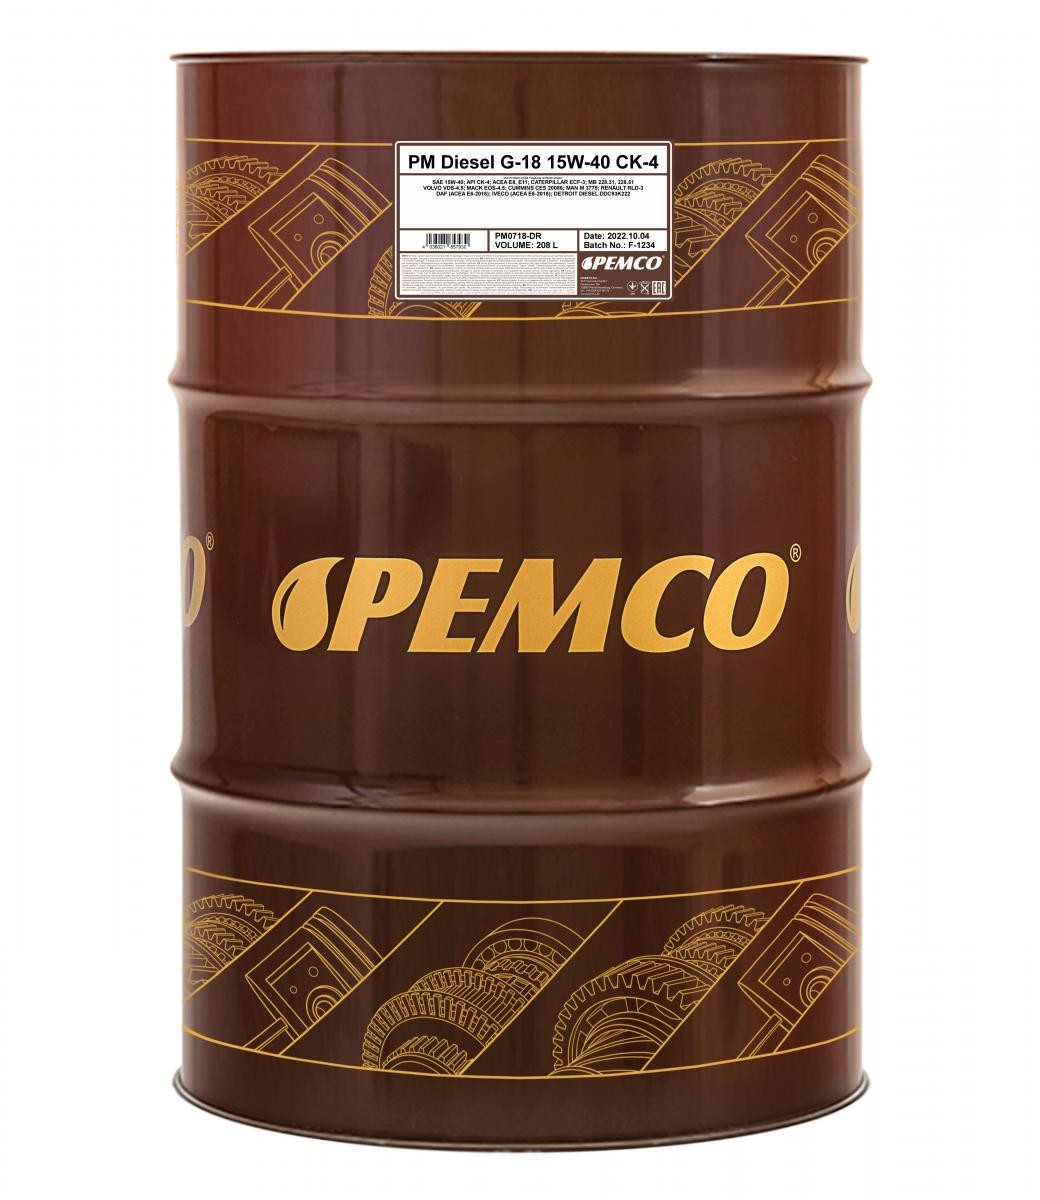 Comprare PM0718-DR PEMCO Truck SHPD, DIESEL G-18 15W-40, 208l, Olio sintetico Olio motore PM0718-DR poco costoso